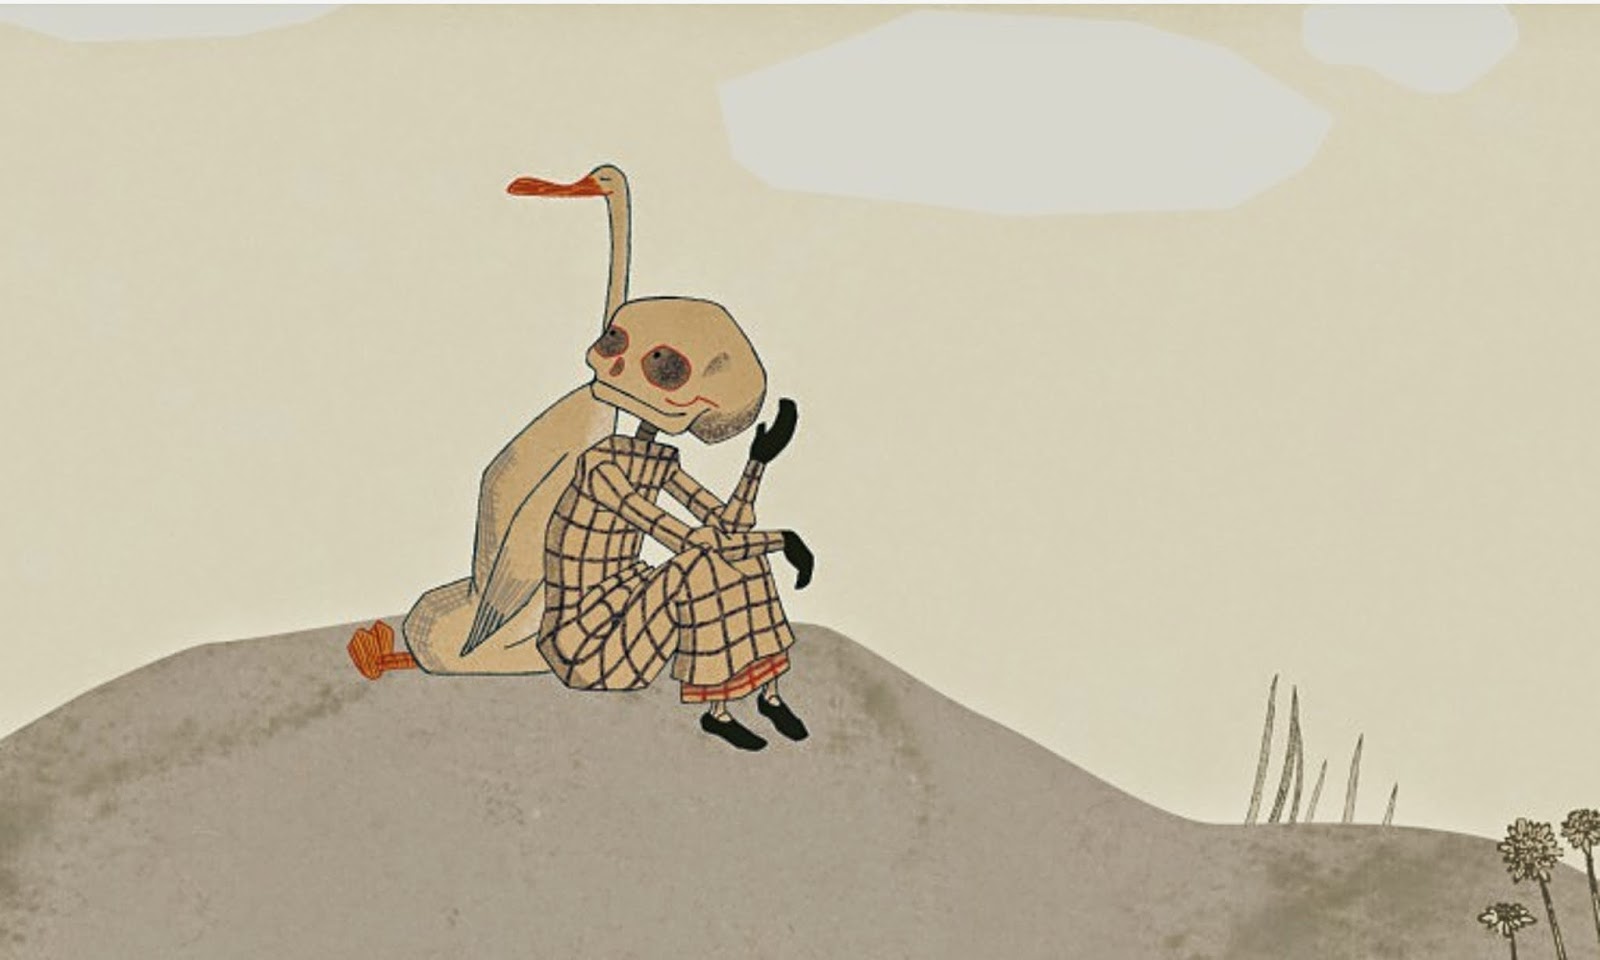 Ilustração interna do livro "O pato, a morte e a tulipa" mostra um pequeno pato conversando com uma caveira, sentados em uma pedra.